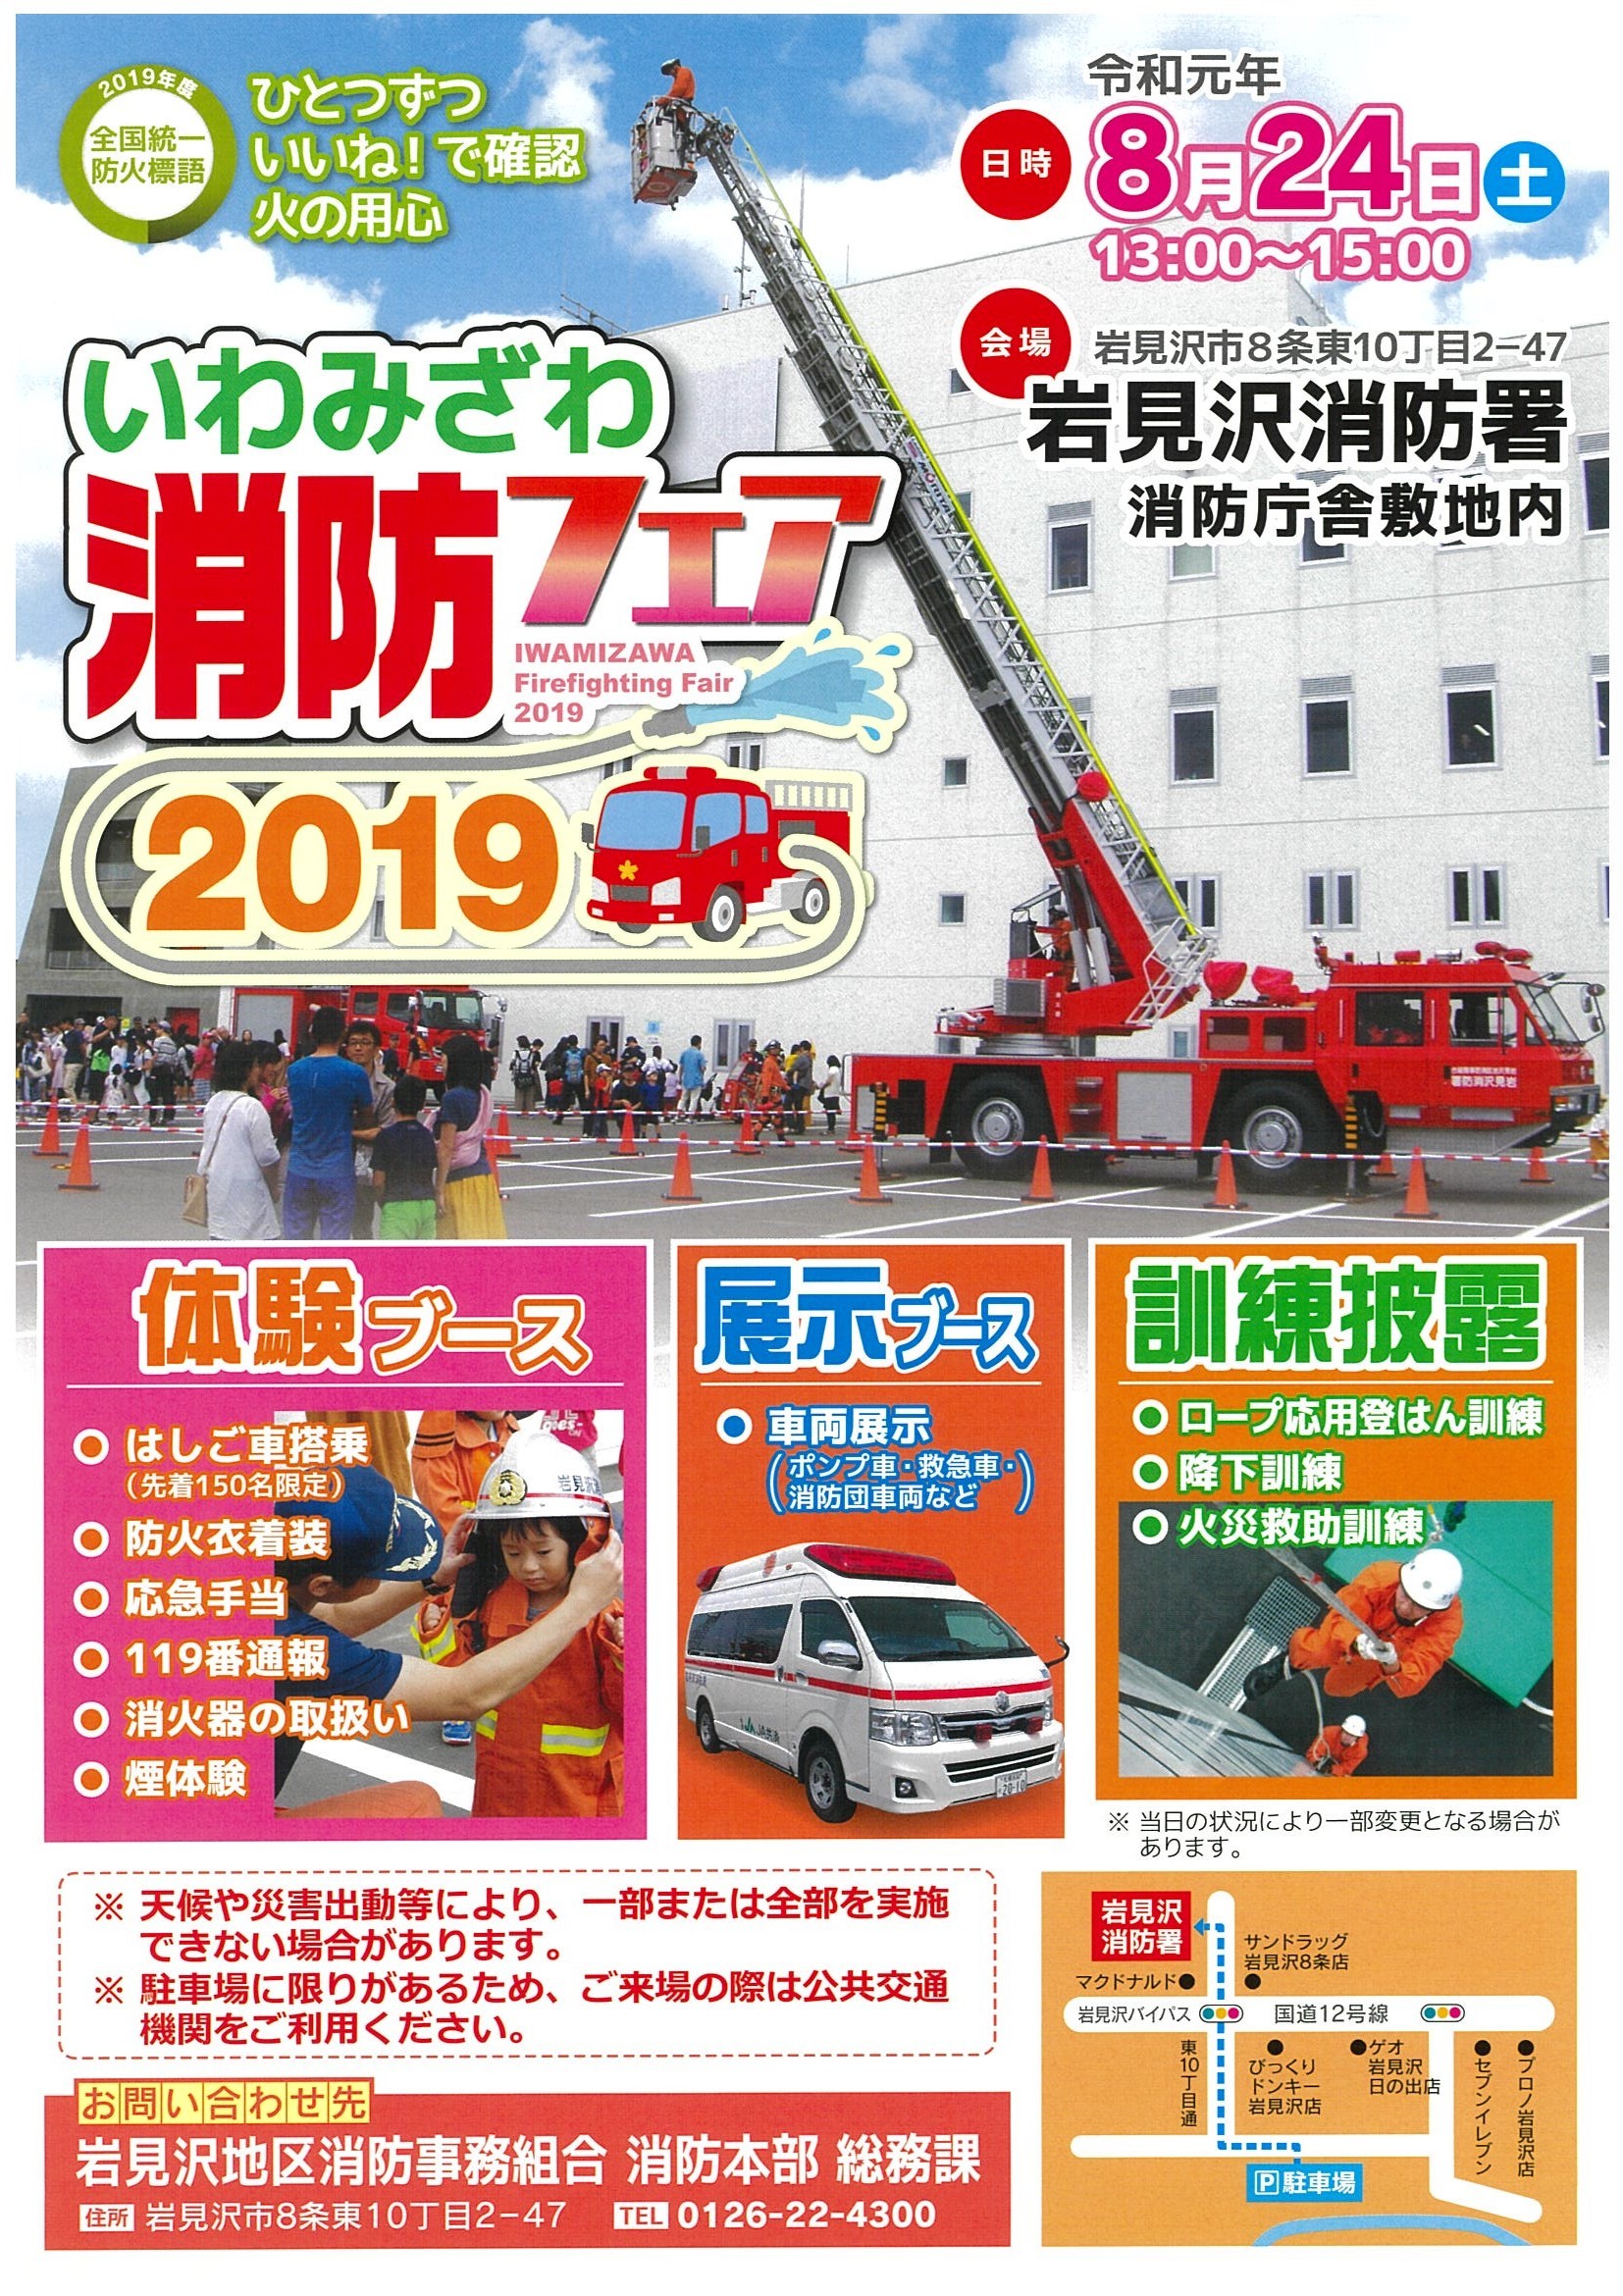 2019-08-24 消防フェア